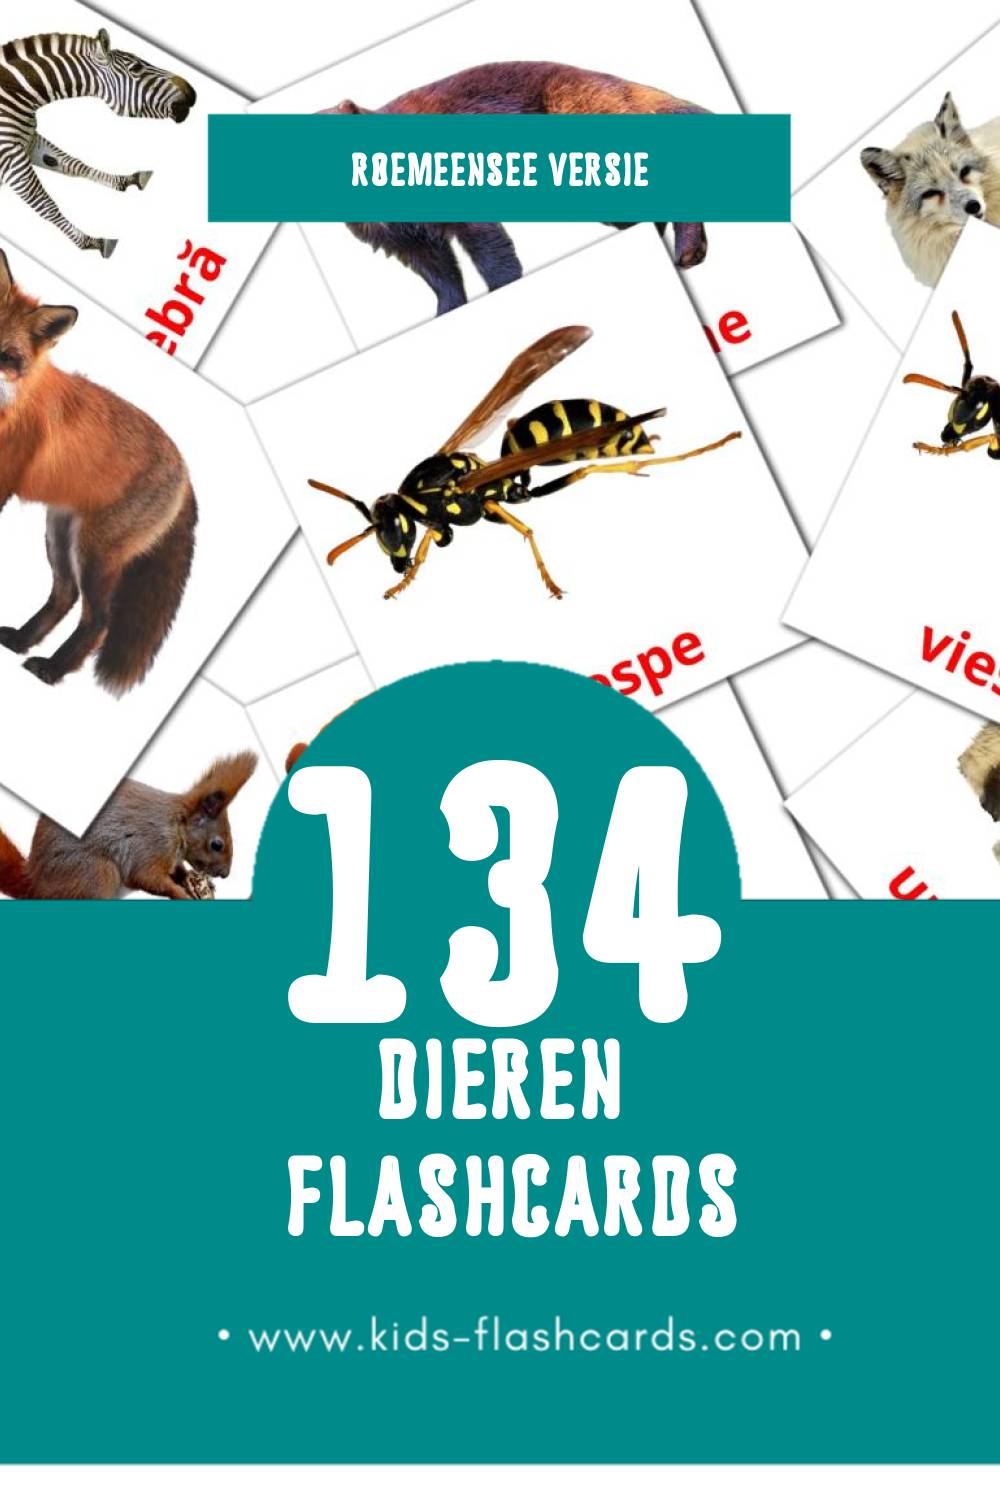 Visuele Animale Flashcards voor Kleuters (134 kaarten in het Roemeense)